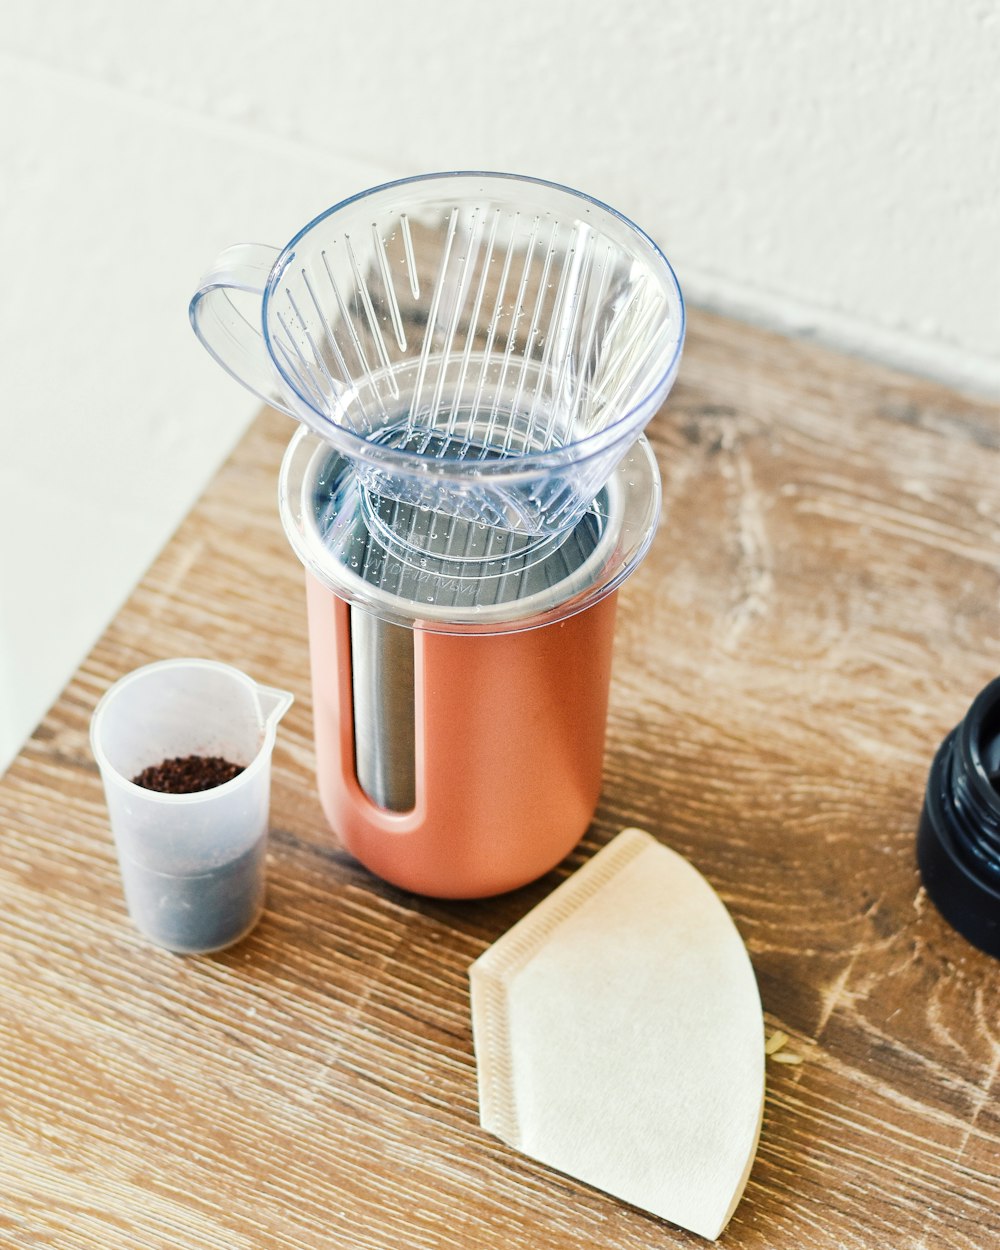 Ein Mixer, der auf einem Holztisch neben einer Tasse Kaffee steht